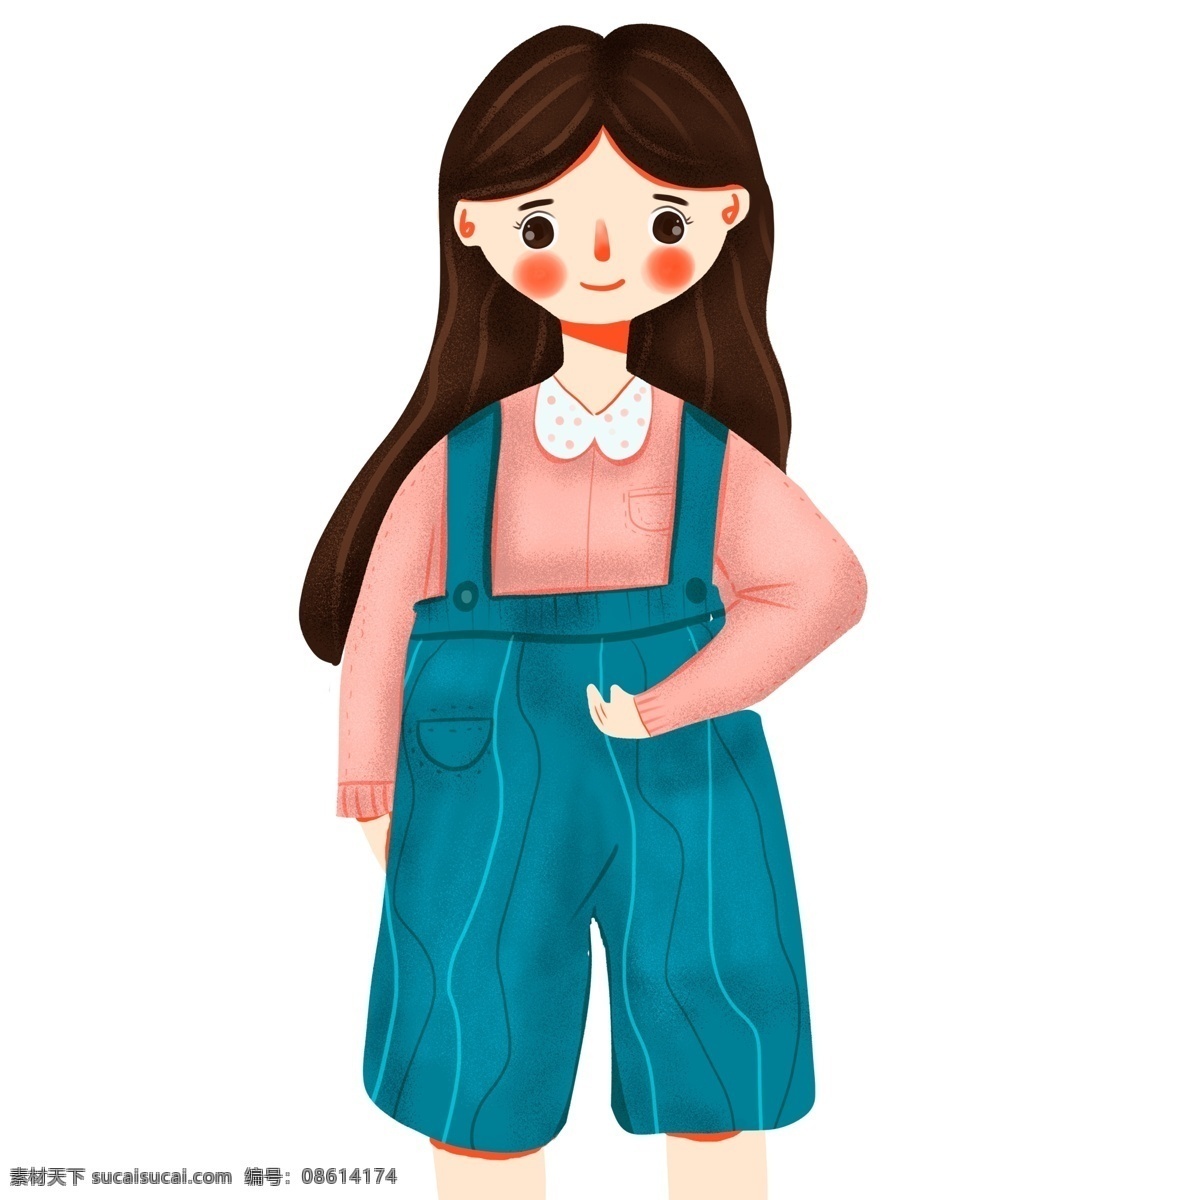 扁平化 可爱 穿 背带 裙 小女 生 商用 元素 女孩 人物 插画 儿童 女生 手绘 国际儿童日